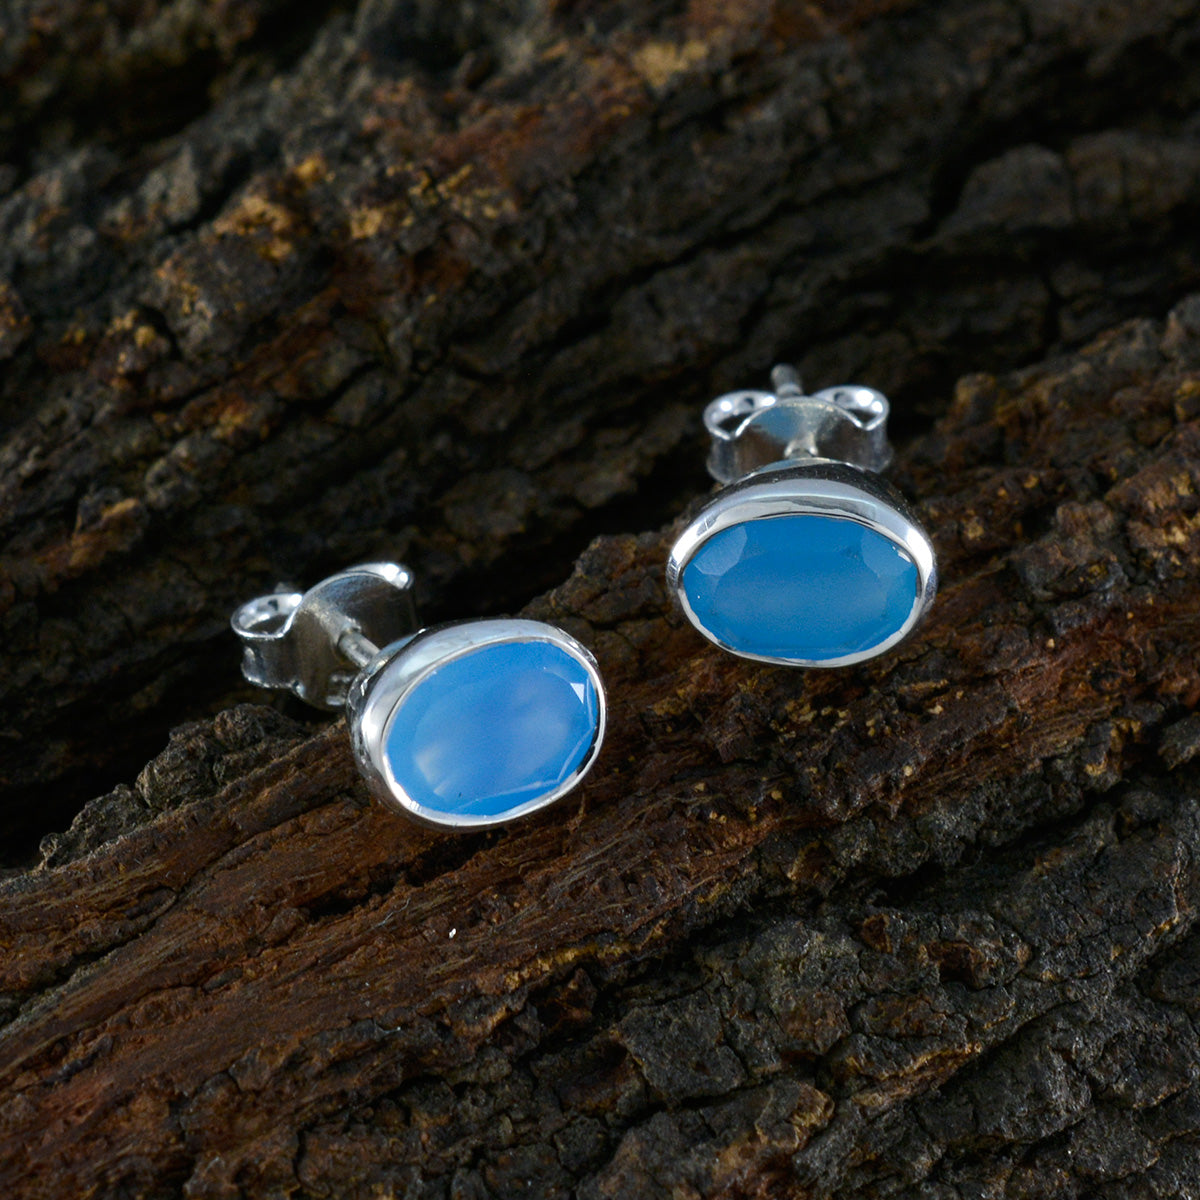 Riyo Hot Sterling Silber Ohrring für Demoiselle Blauer Chalcedon Ohrring Lünettenfassung Blauer Ohrring Ohrstecker